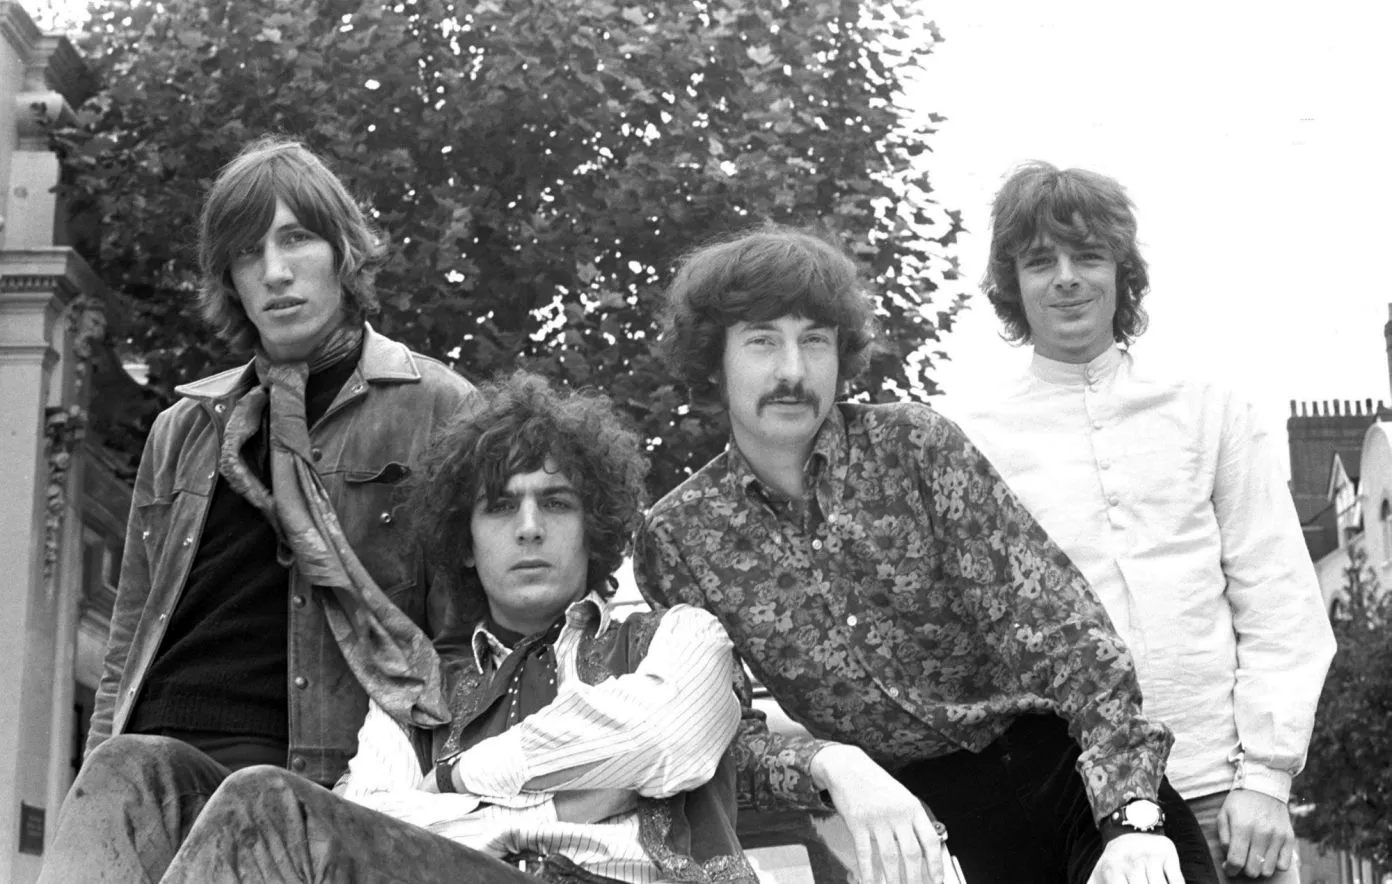 Syd Barrett 1967